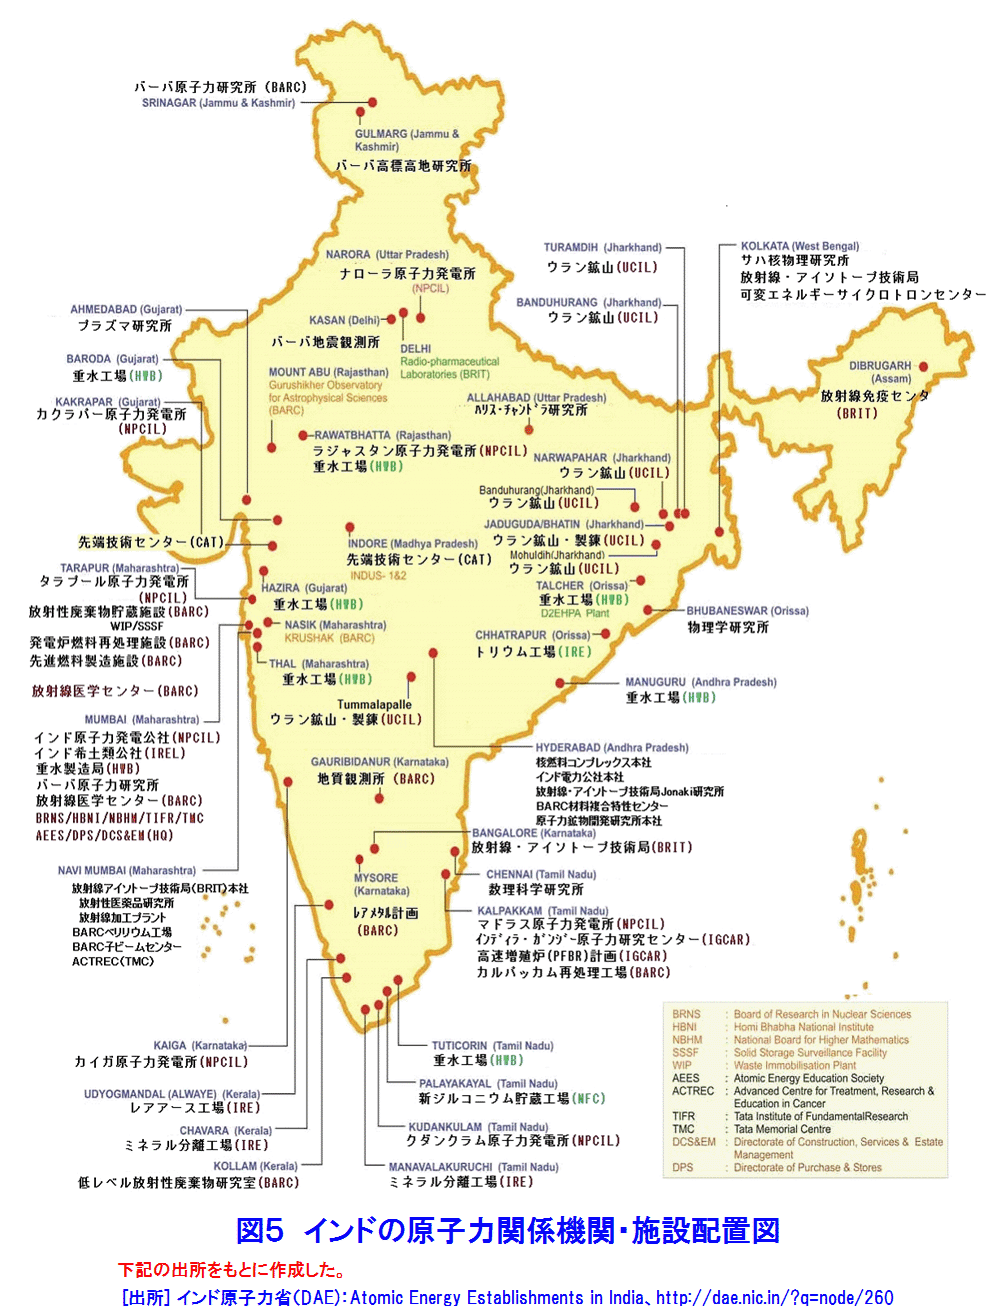 図５  インドの原子力関係機関・施設配置図